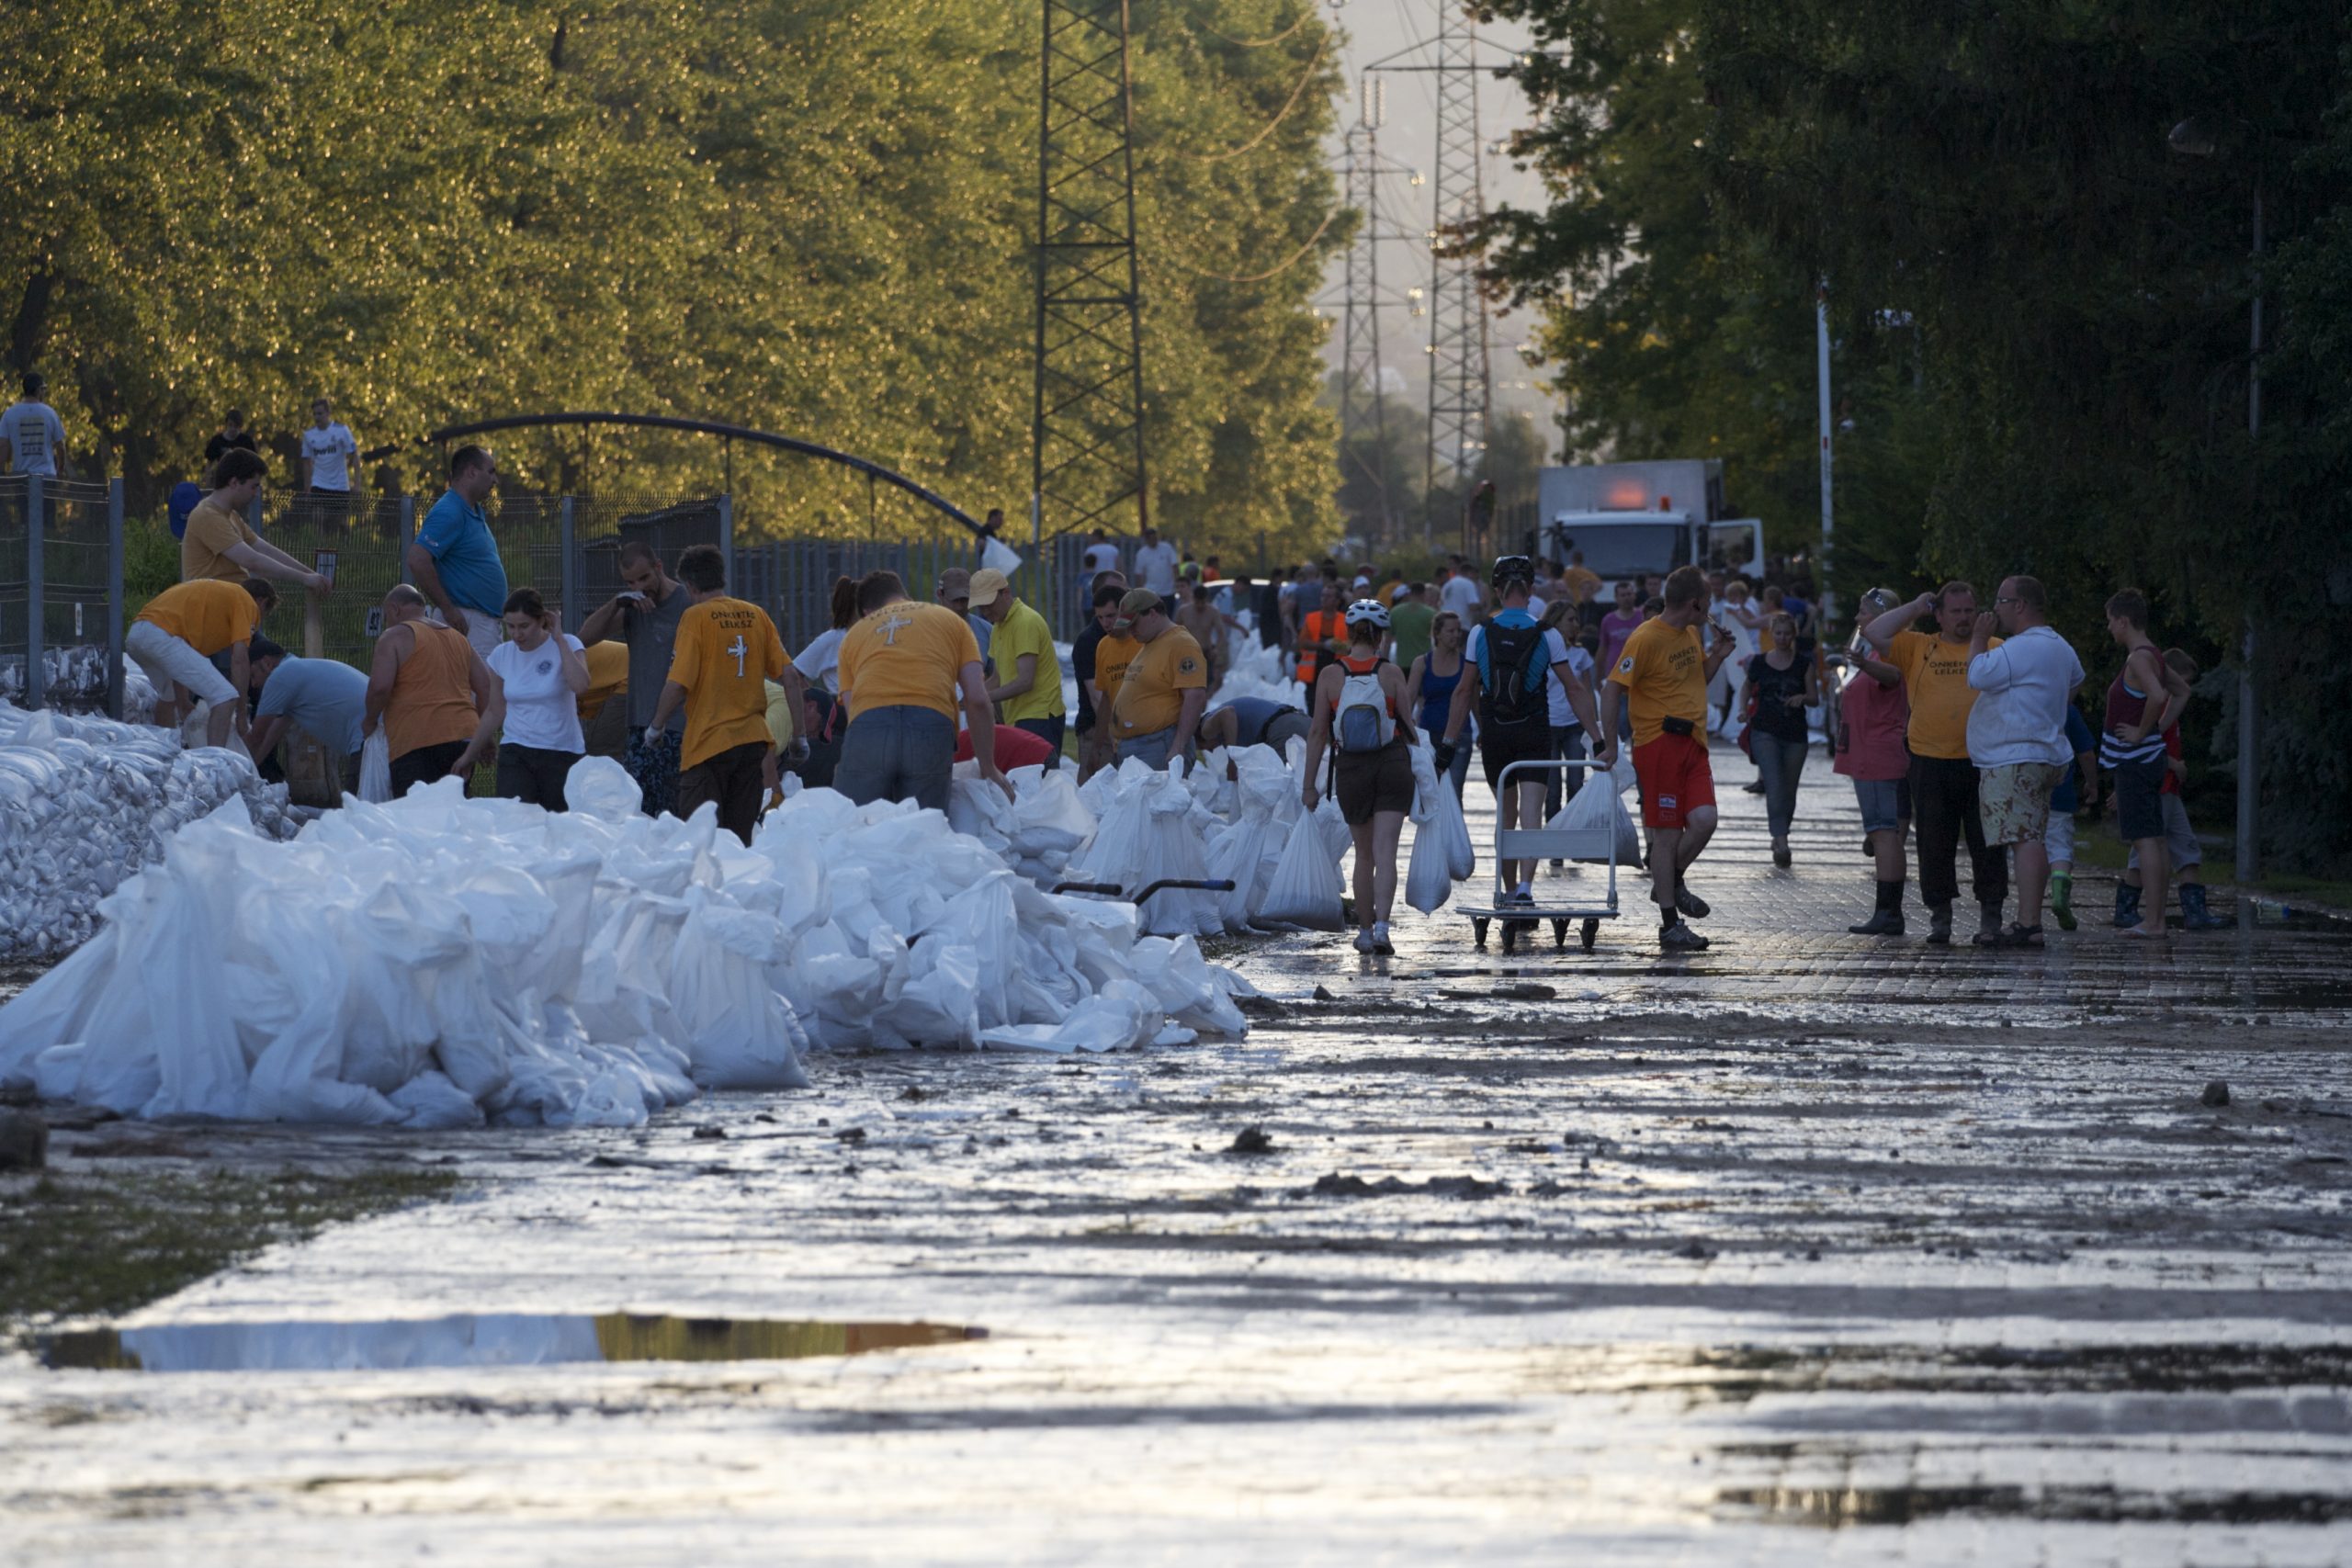 Szcientológia önkéntes lelkészek segítettek az árvízvédelmi munkálatokban